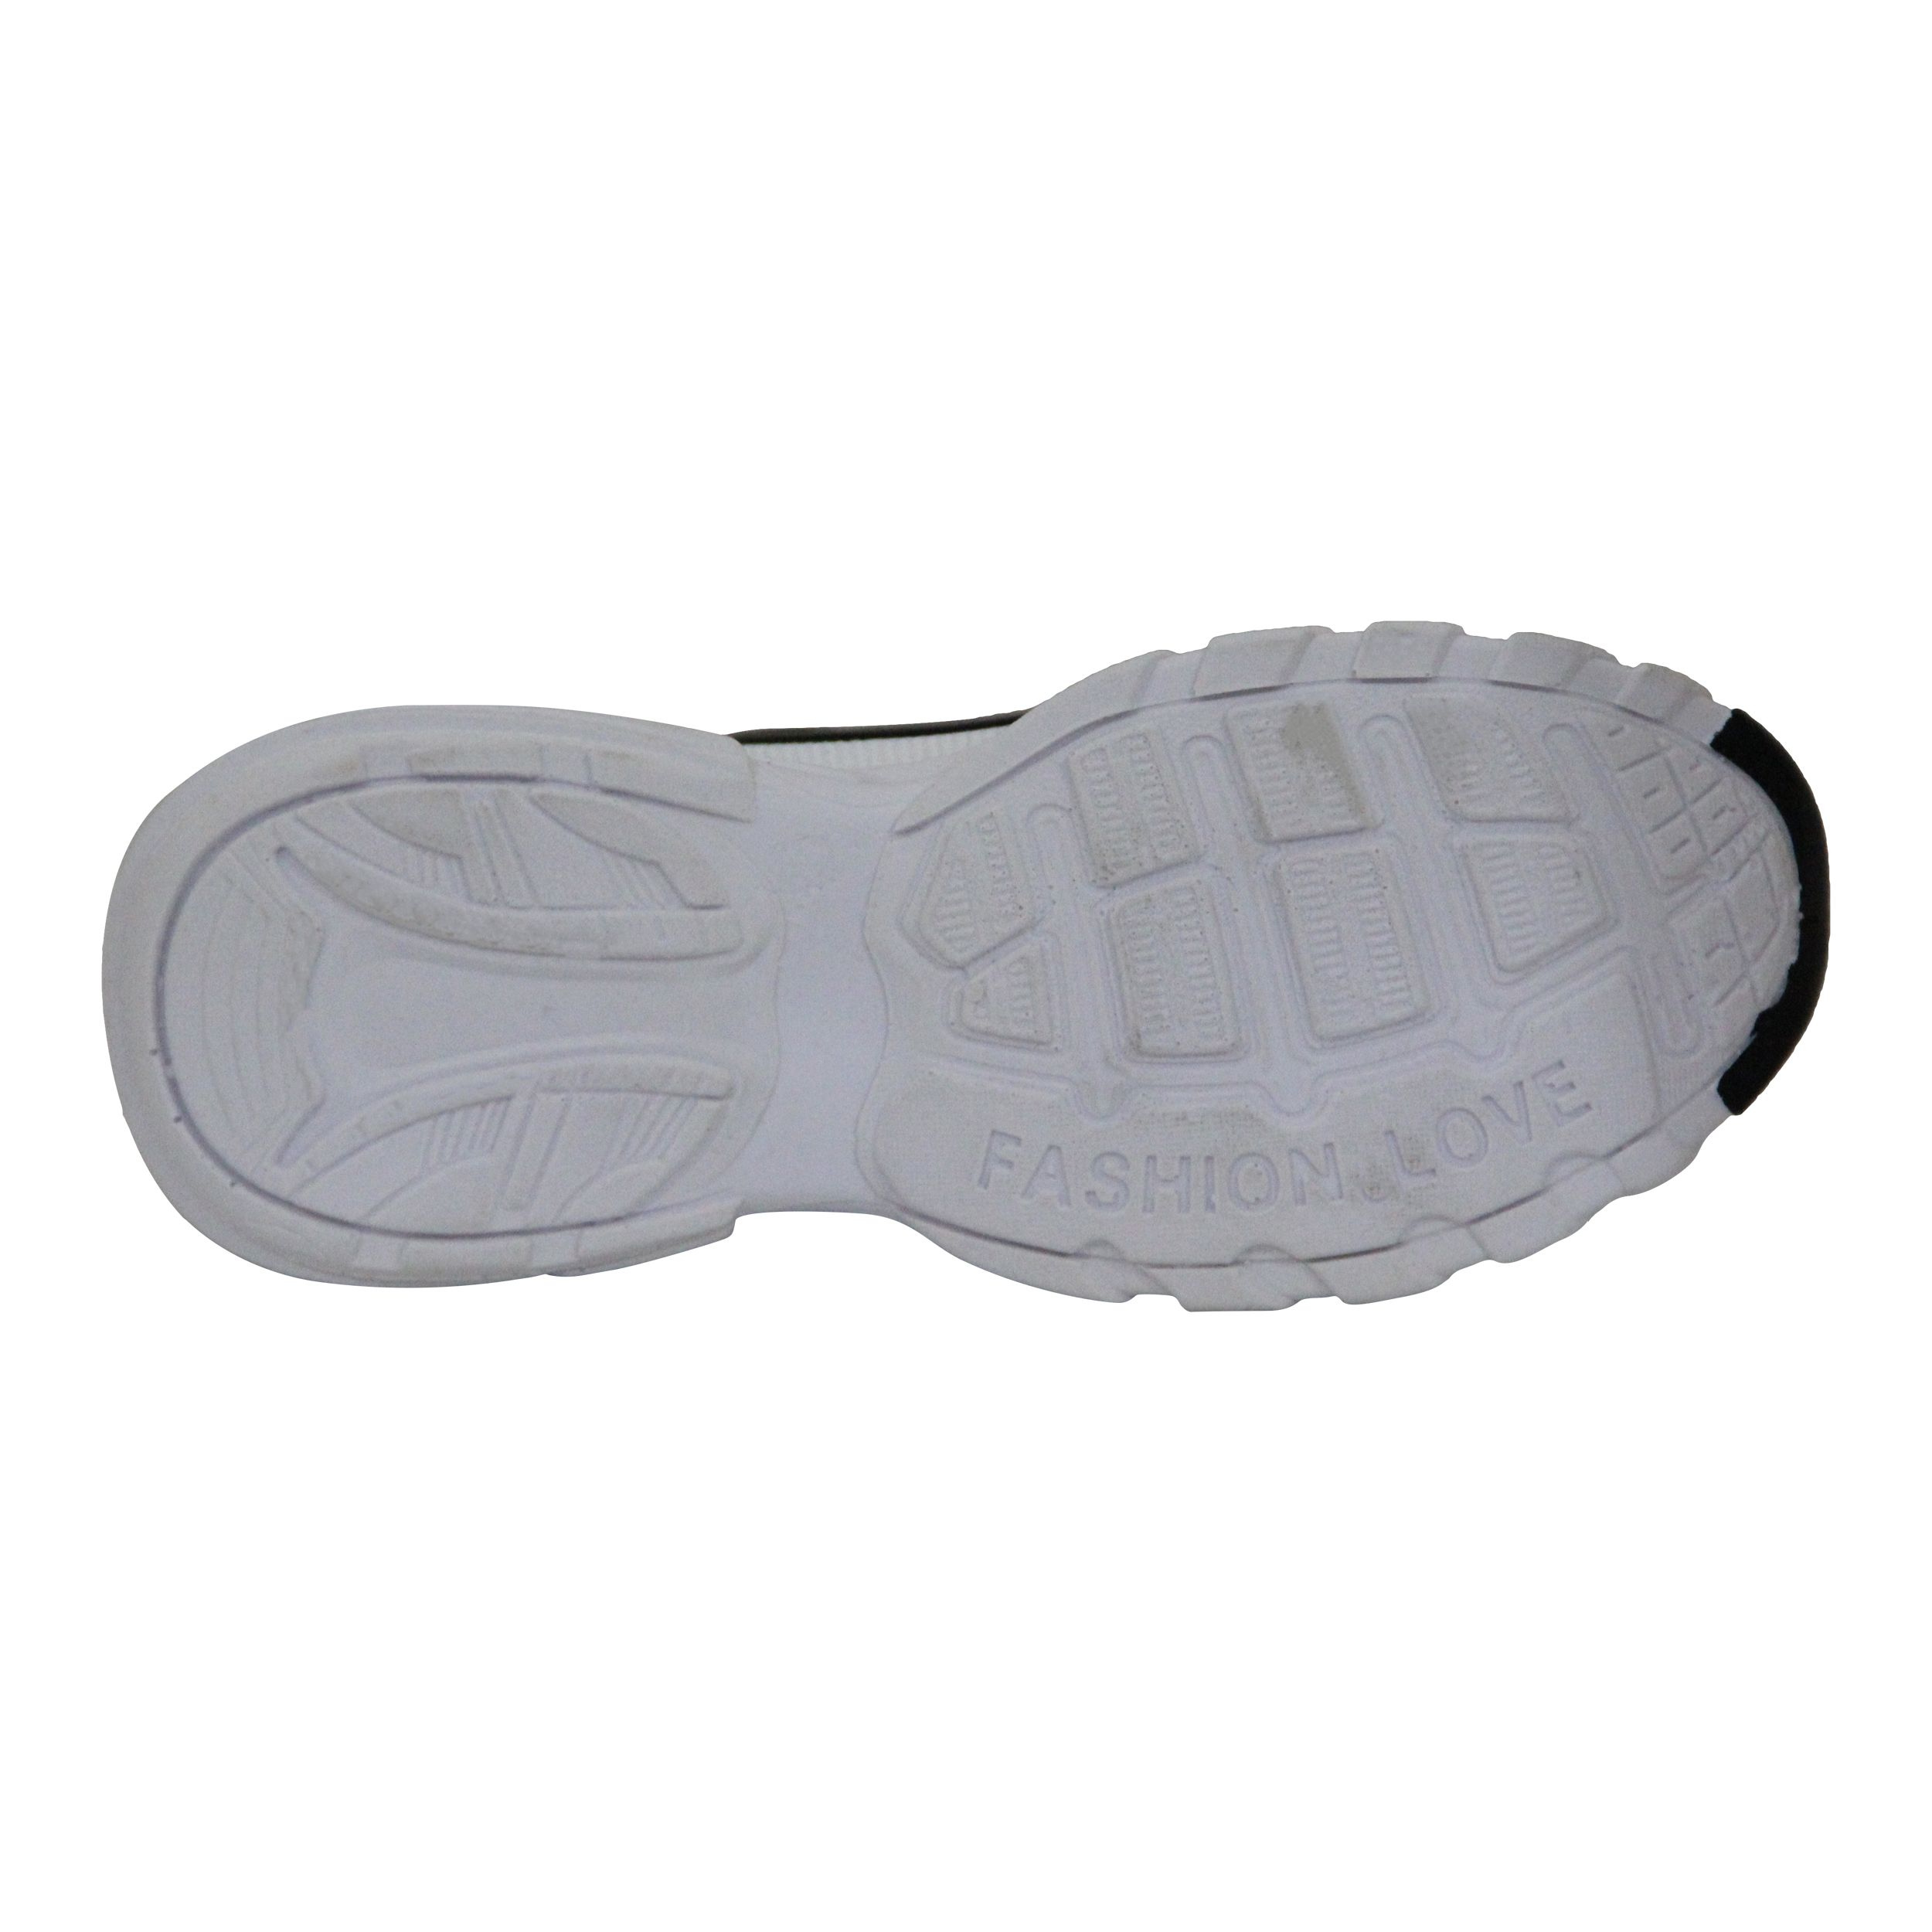  کفش مخصوص پیاده روی زنانه کد 69-39990